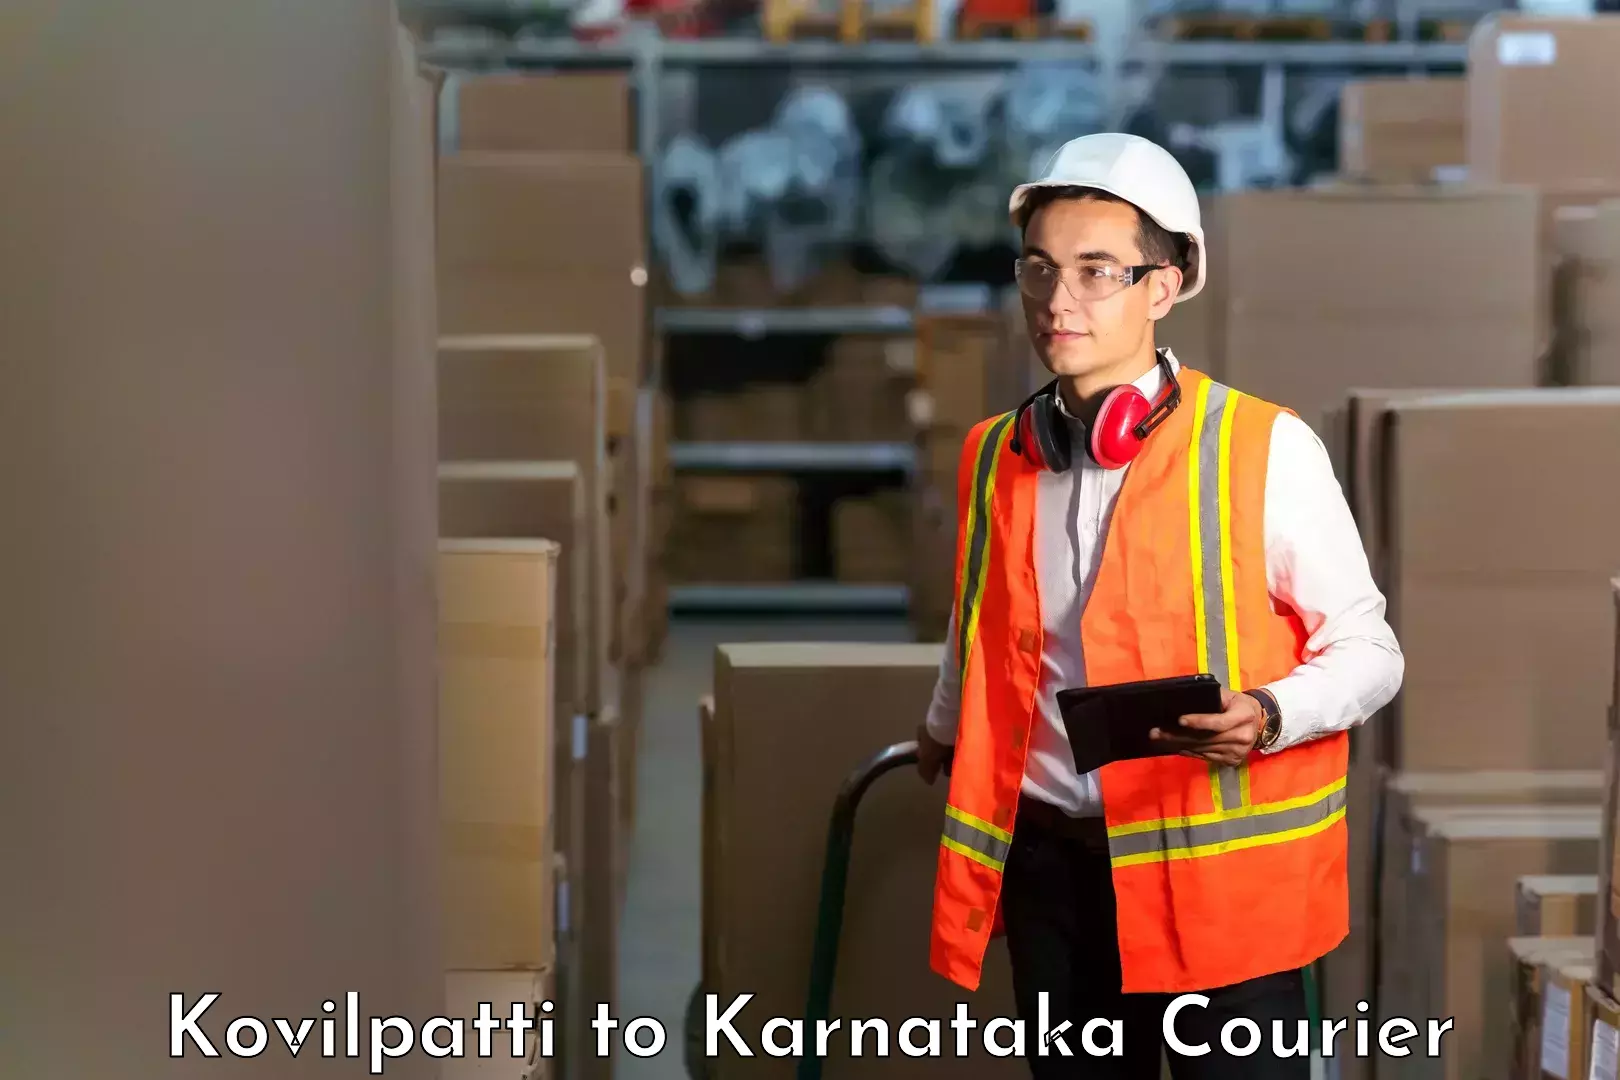 Affordable parcel service Kovilpatti to Karnataka